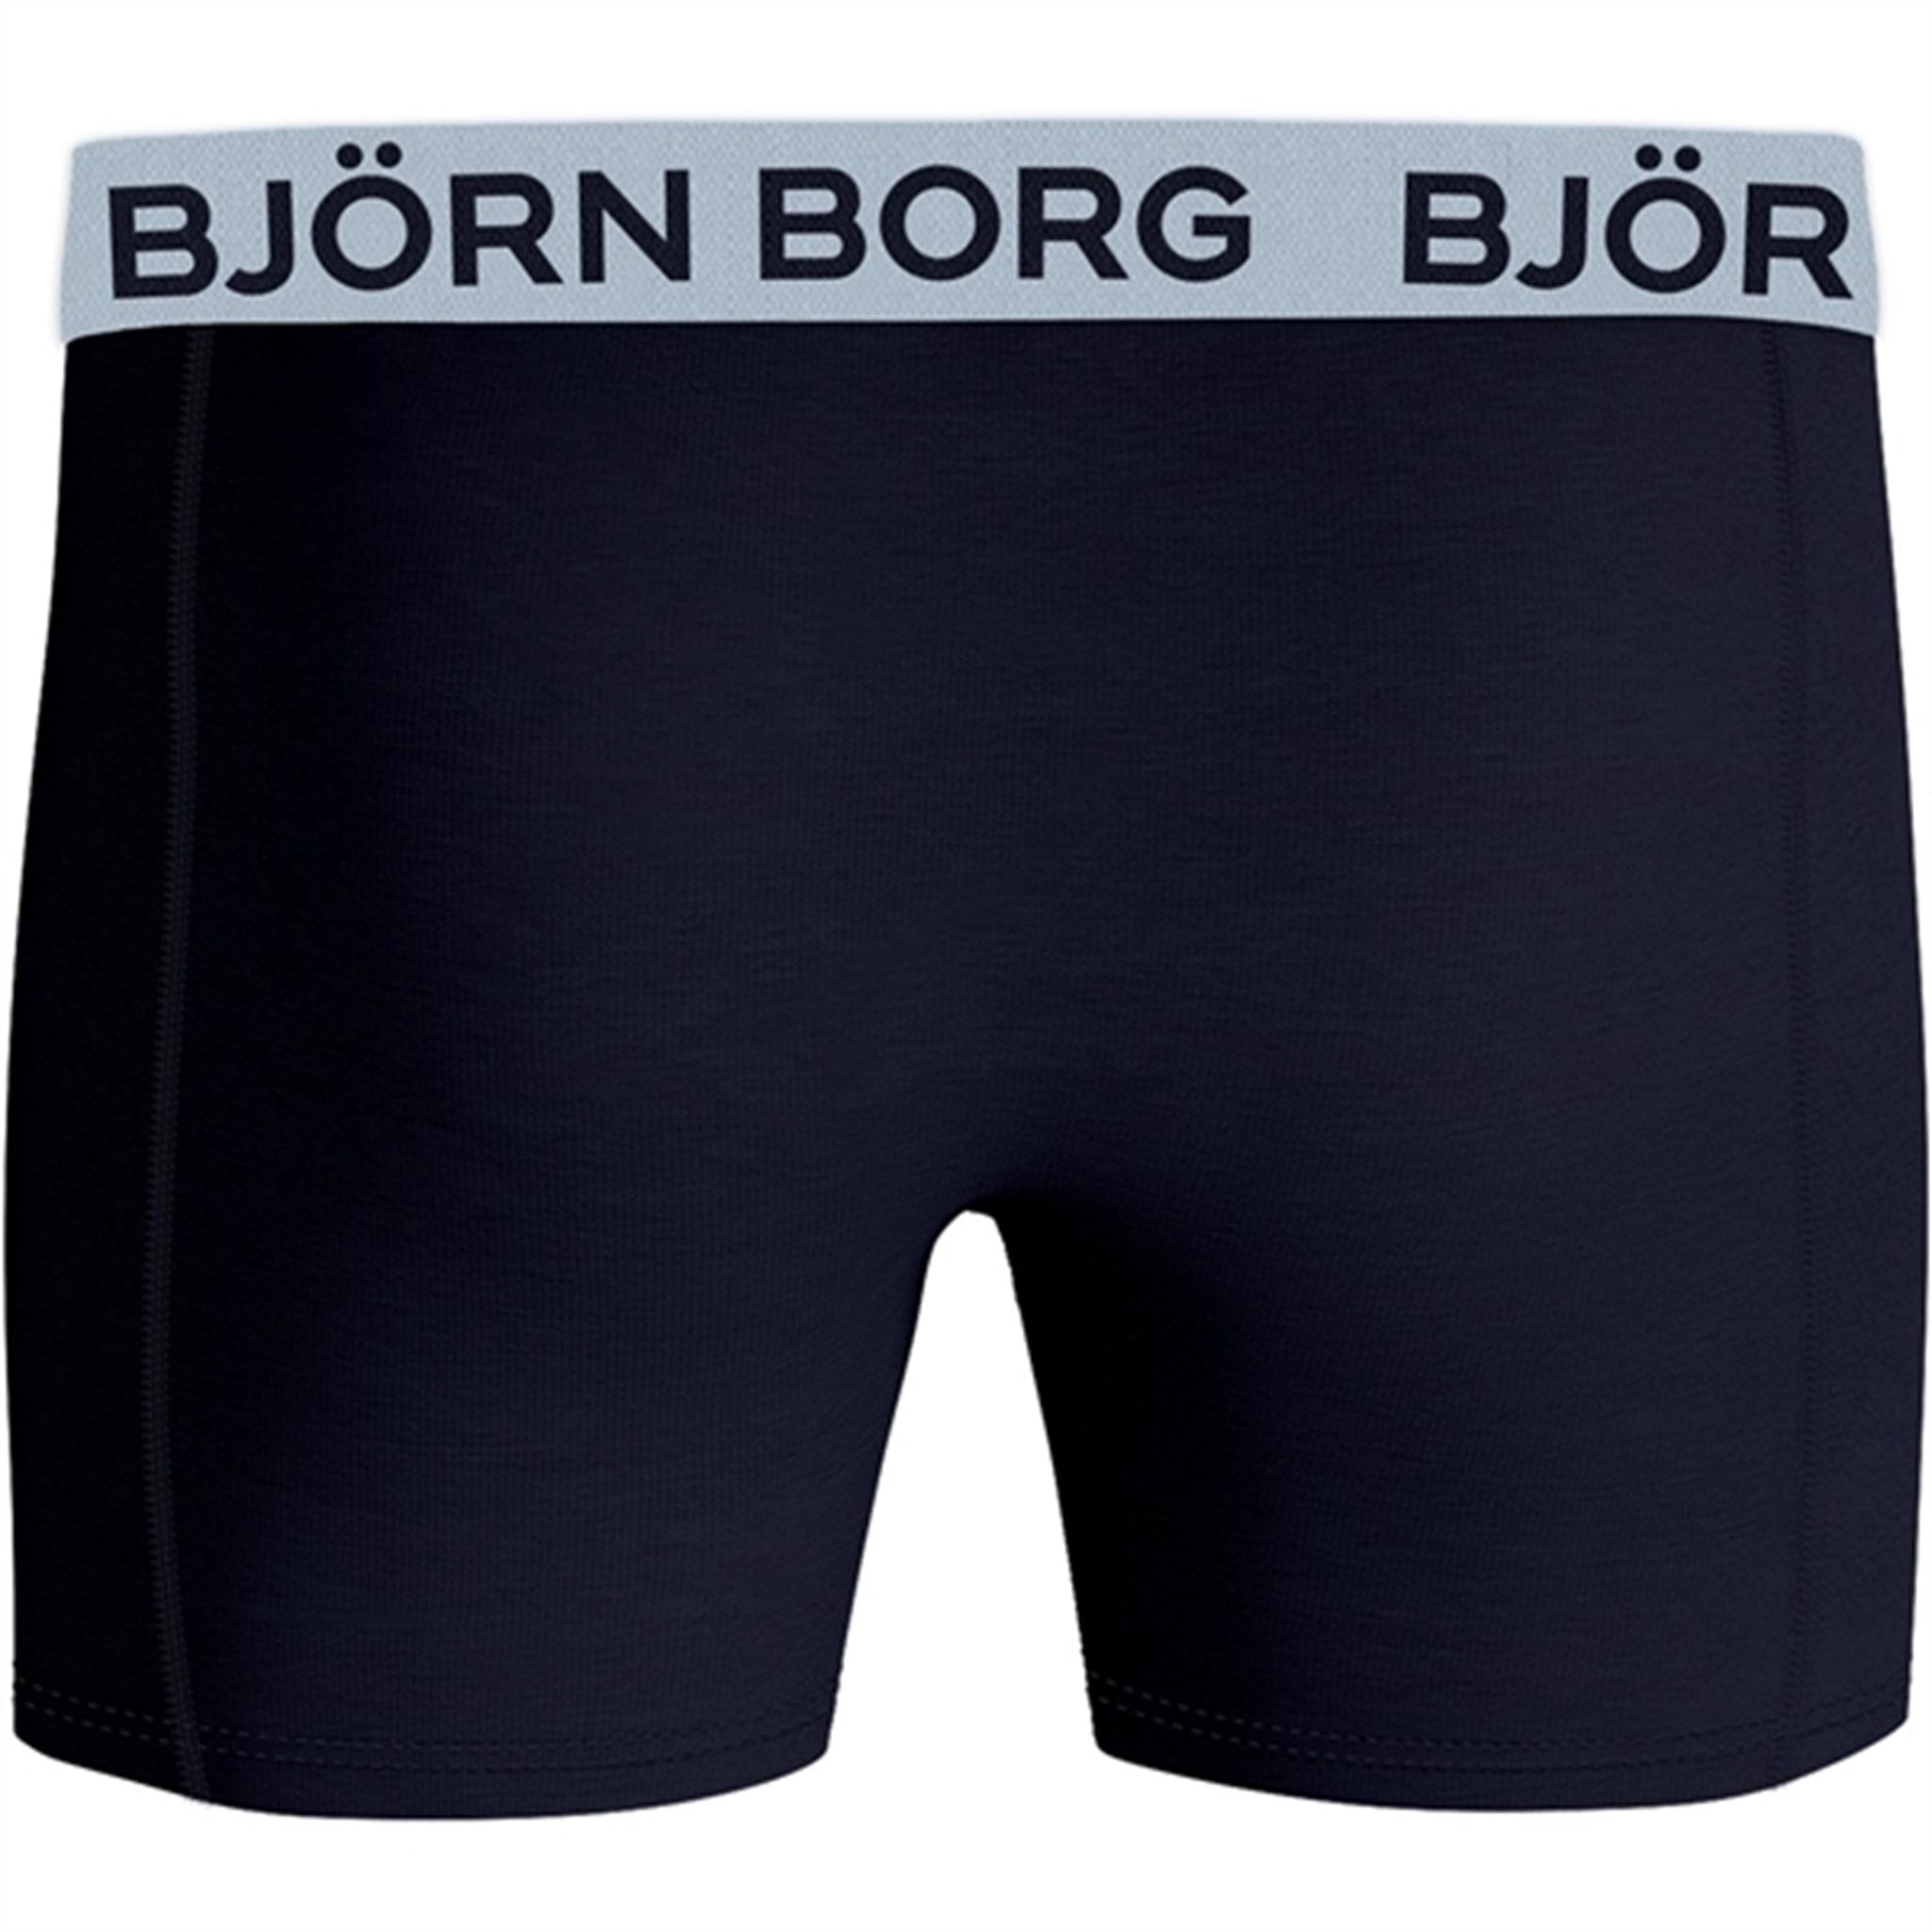 Björn Borg Core Boxershorts 3-pack Multi 2